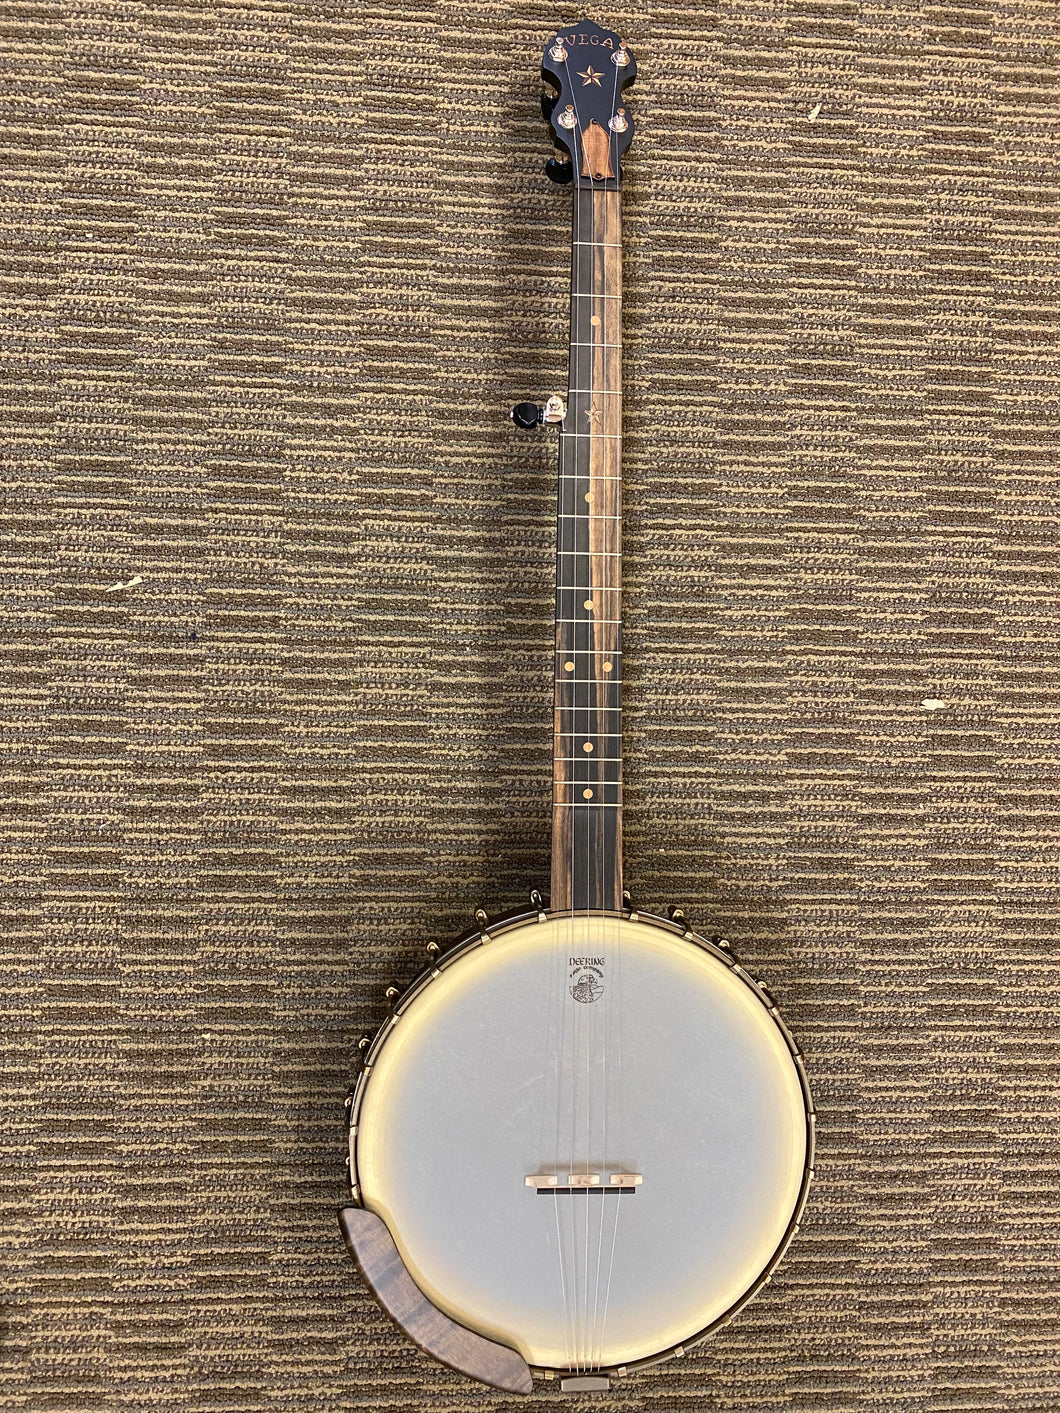 Vega Vintage star 5 string banjo 